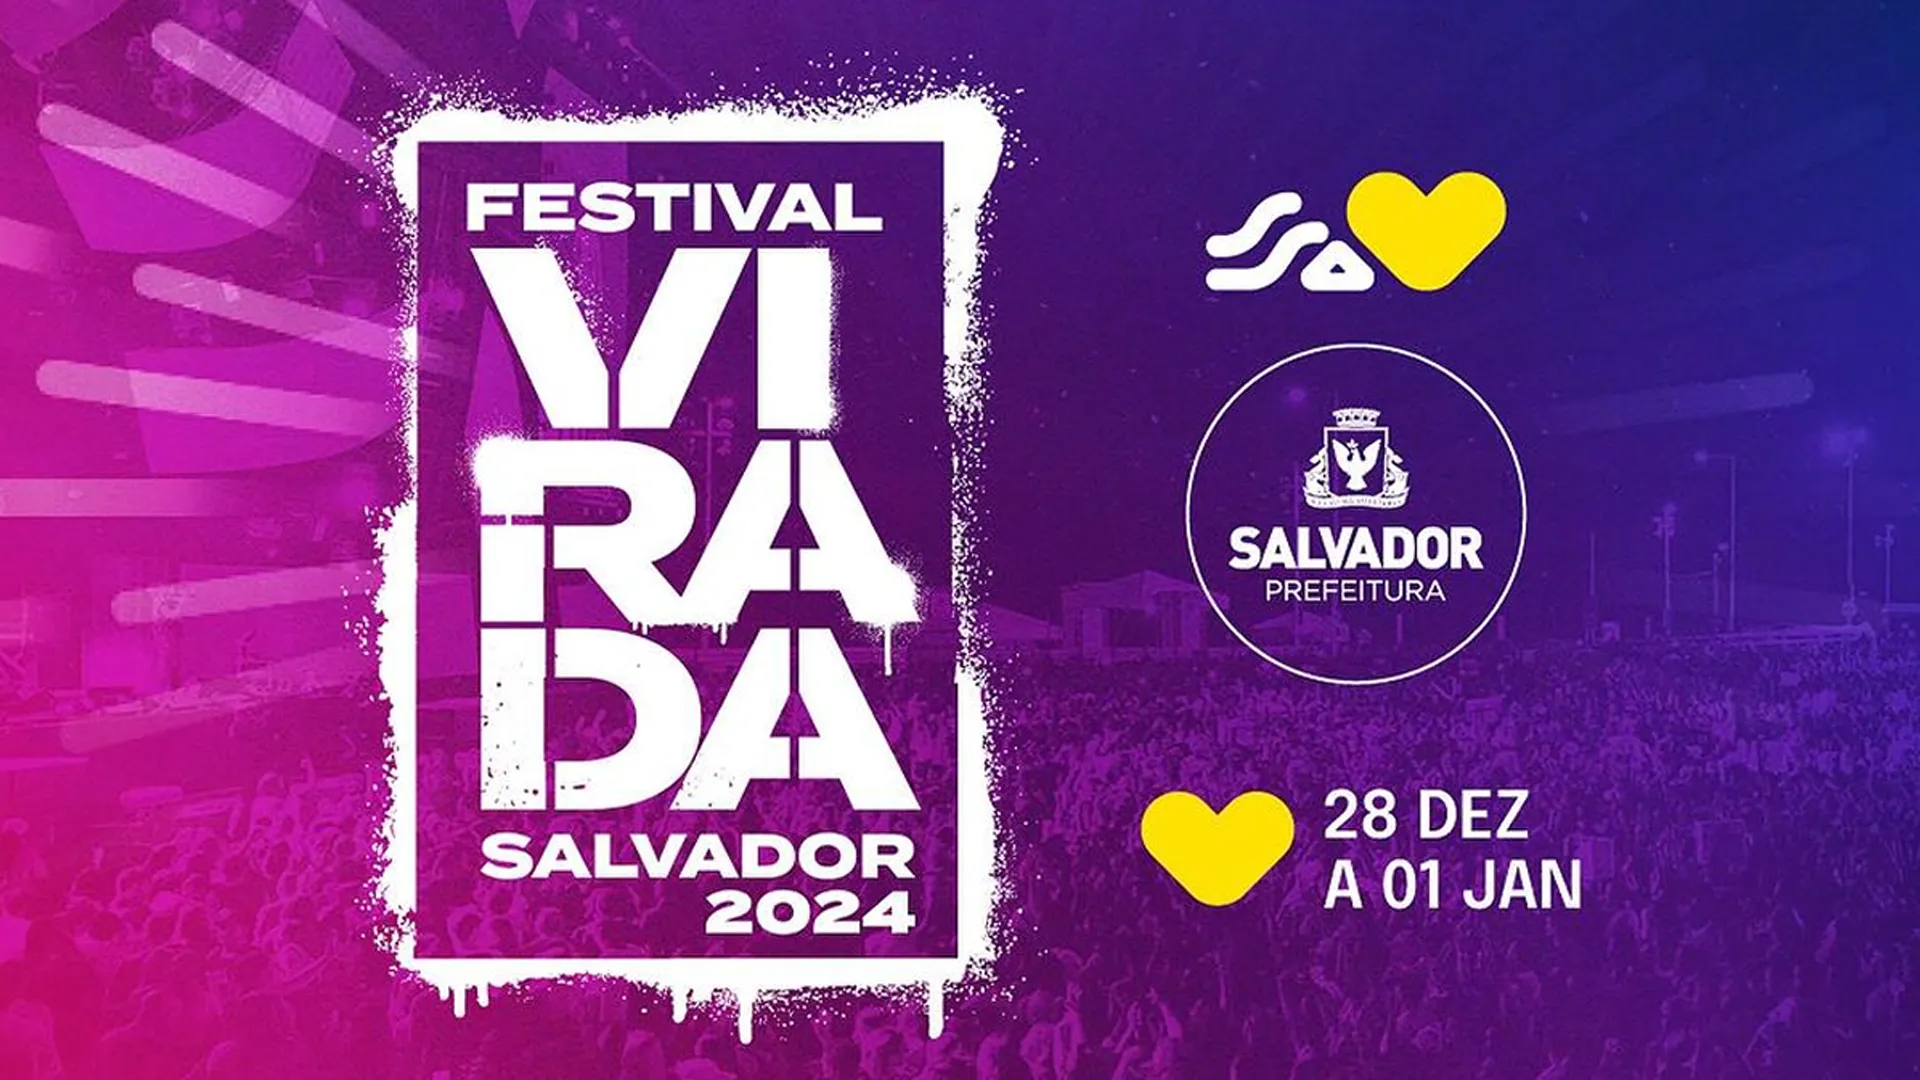 
		Festival Virada Salvador 2024 - 29 de dezembro